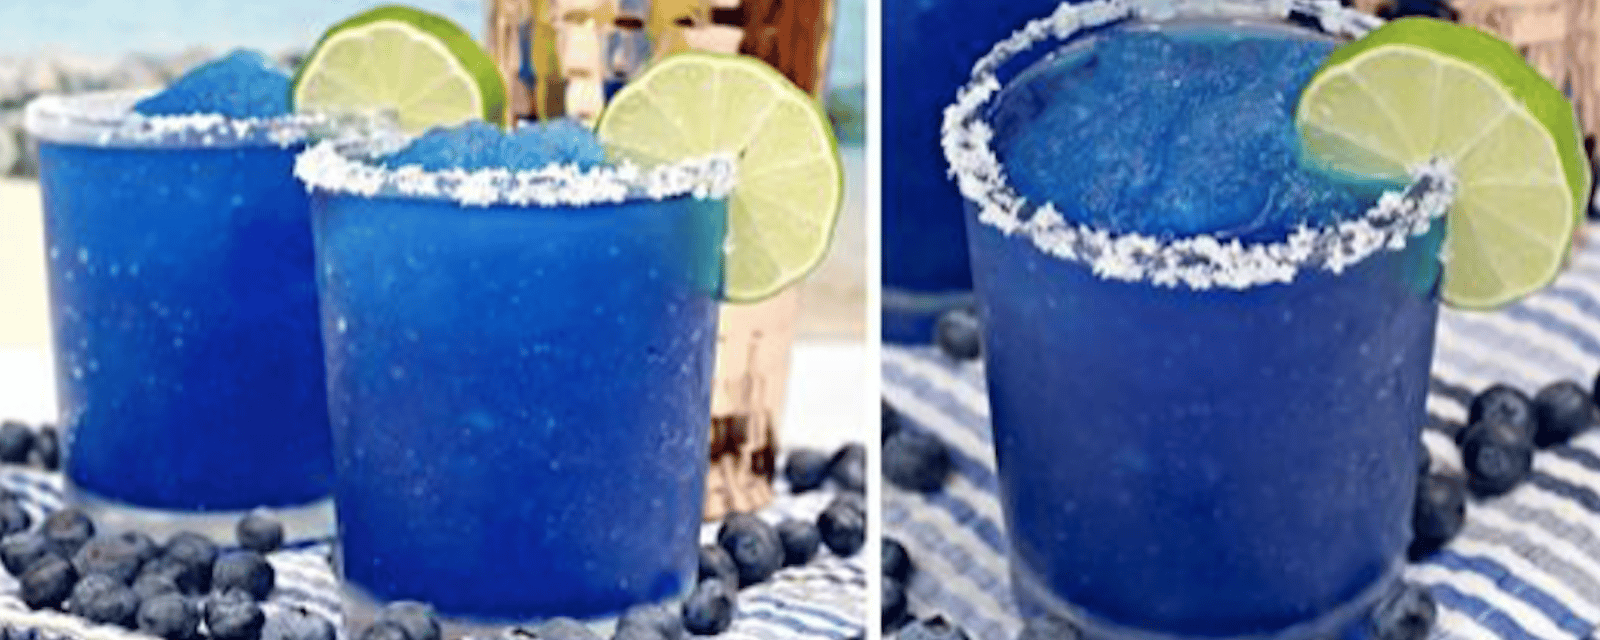 Magnifique Margarita glacée aux bleuets